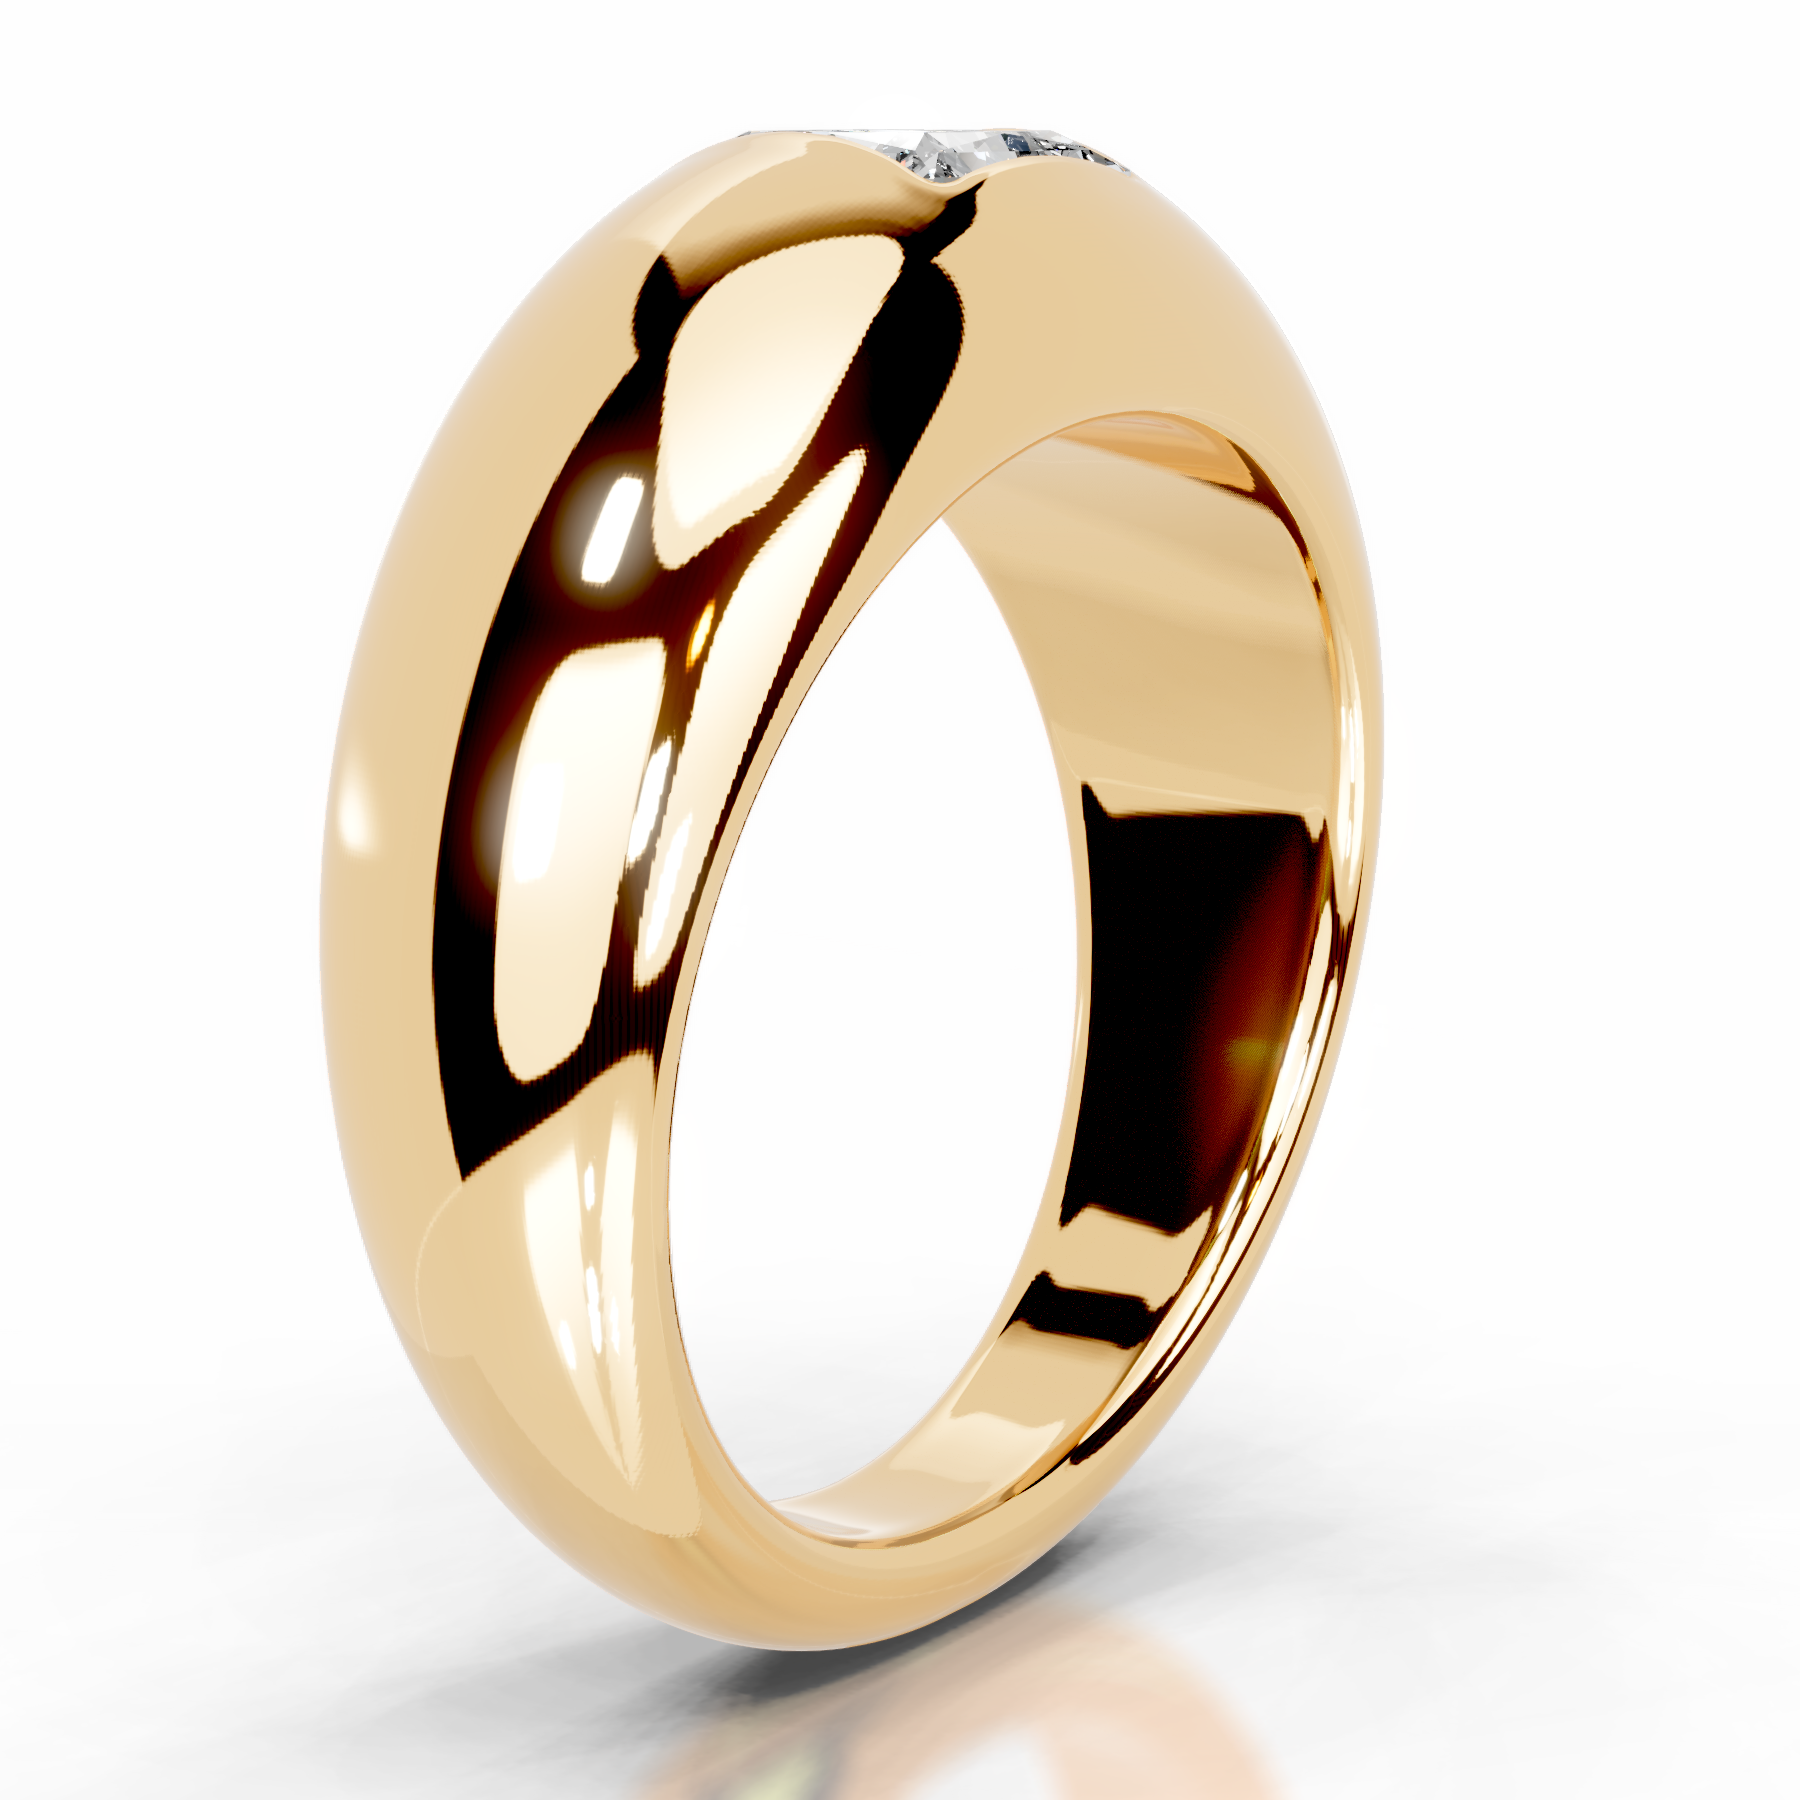 Aaliyah Diamond Engagement Ring   (1 Carat) -18K Yellow Gold